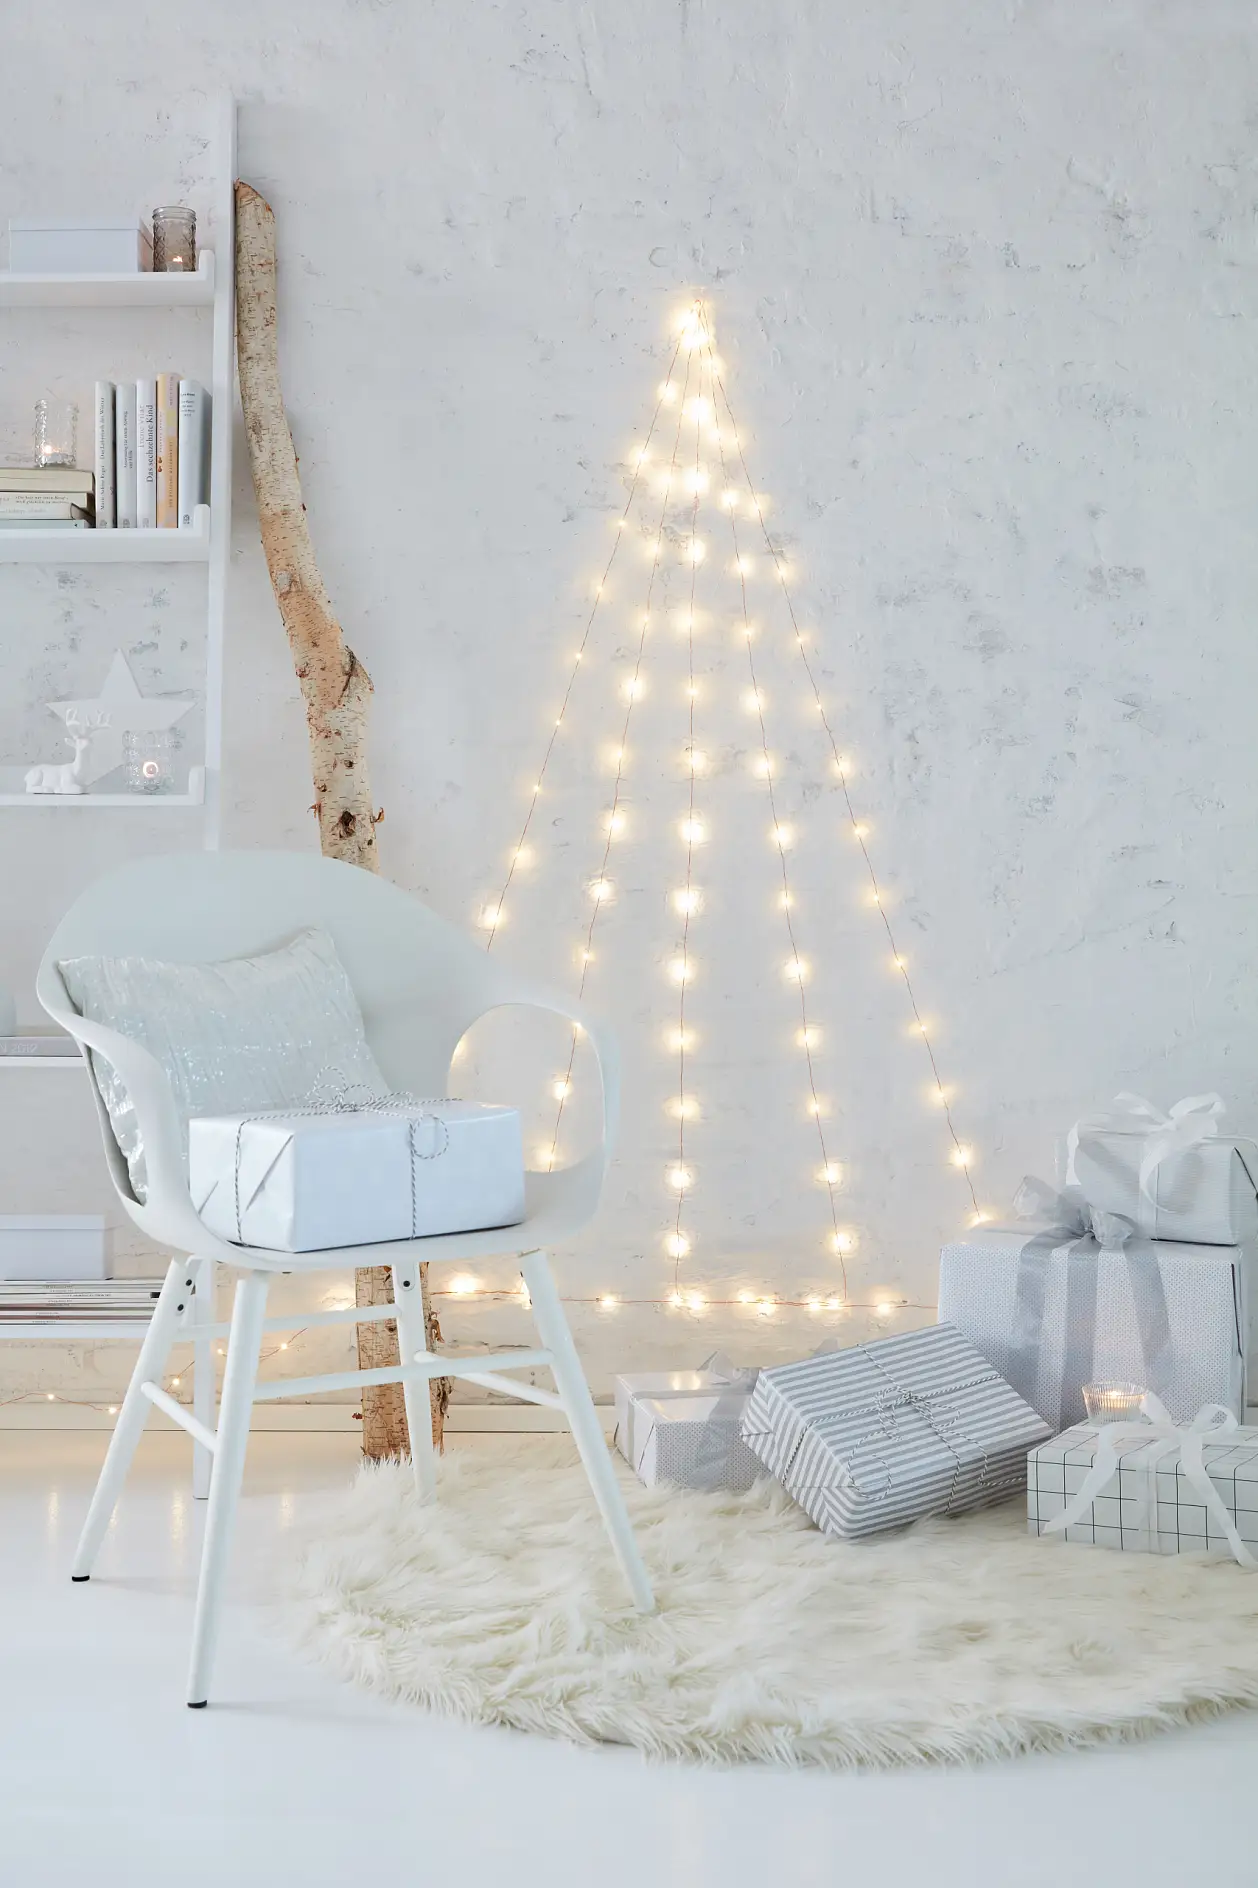 好好欣赏您自己制作的LED圣诞树墙吧！